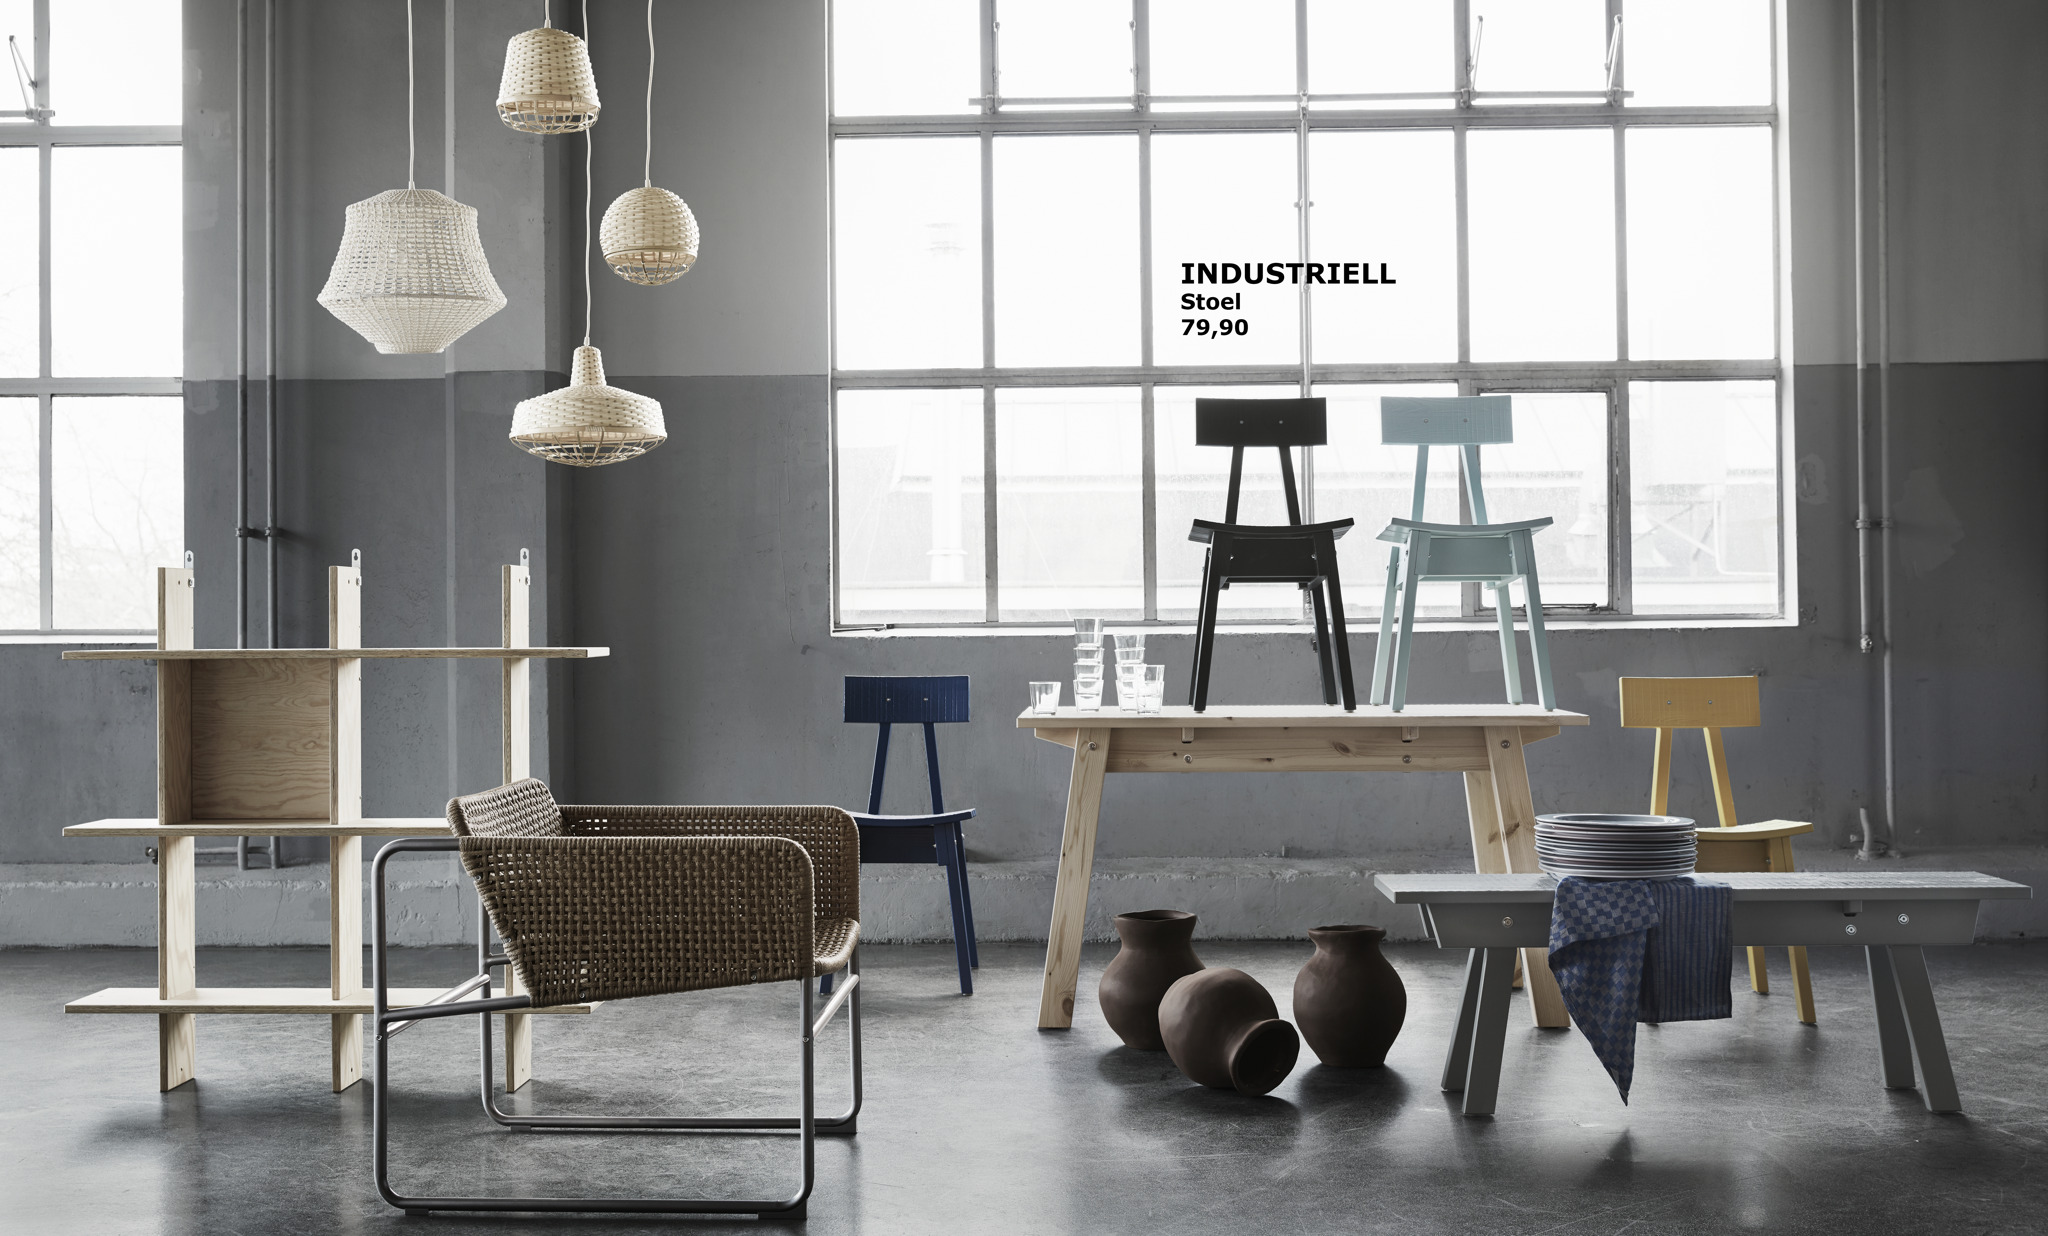 Rommelig Naar behoren tot nu IKEA x Piet Hein Eek: onvolmaakt volmaakt dankzij INDUSTRIELL